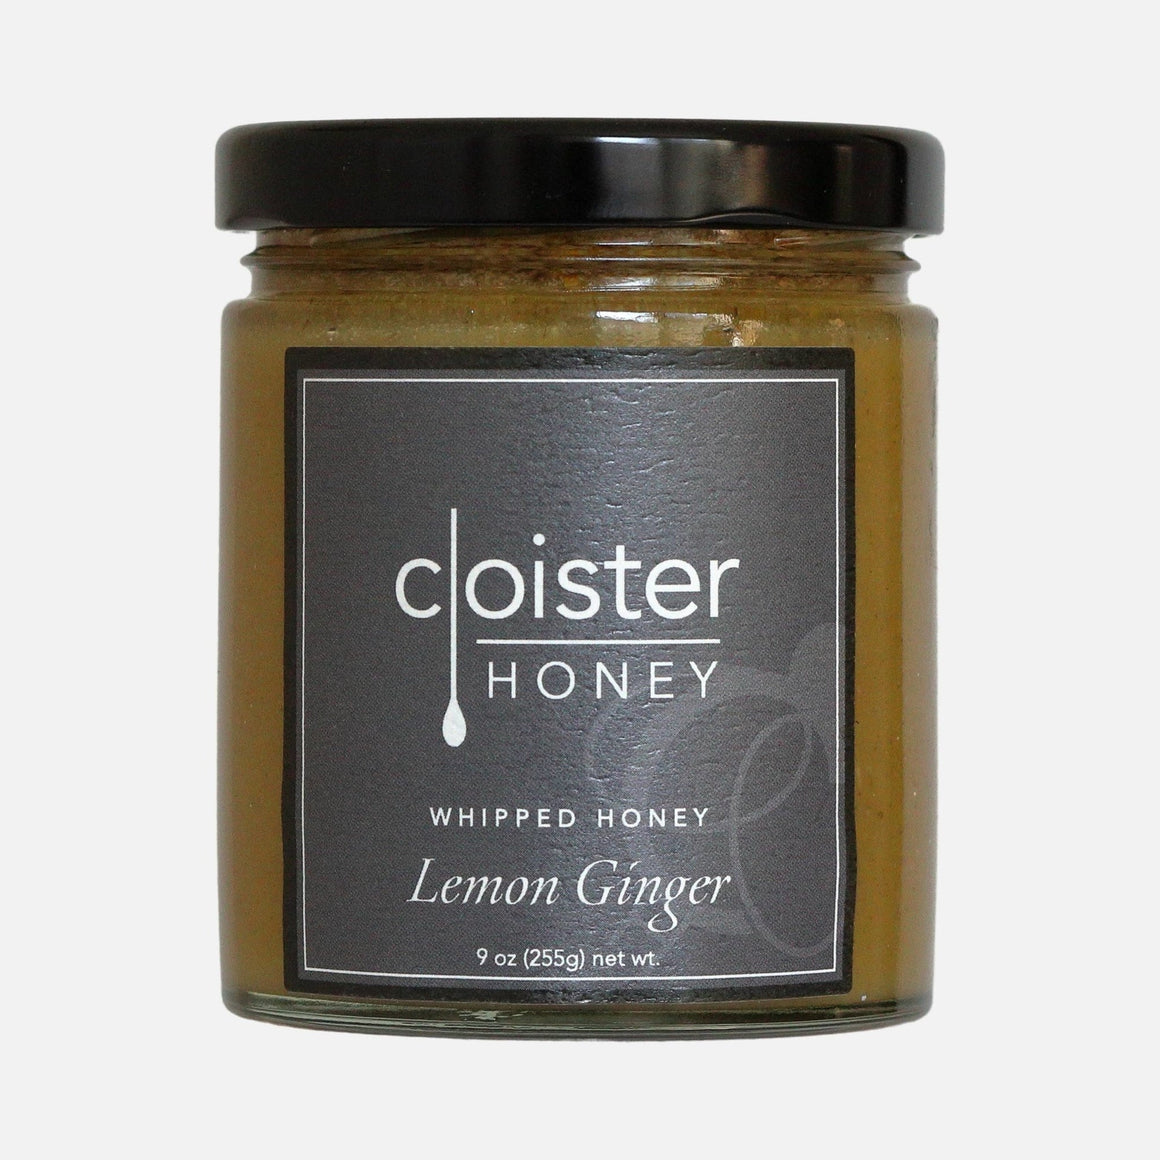 Cloister Whipped Honey with Lemon Ginger